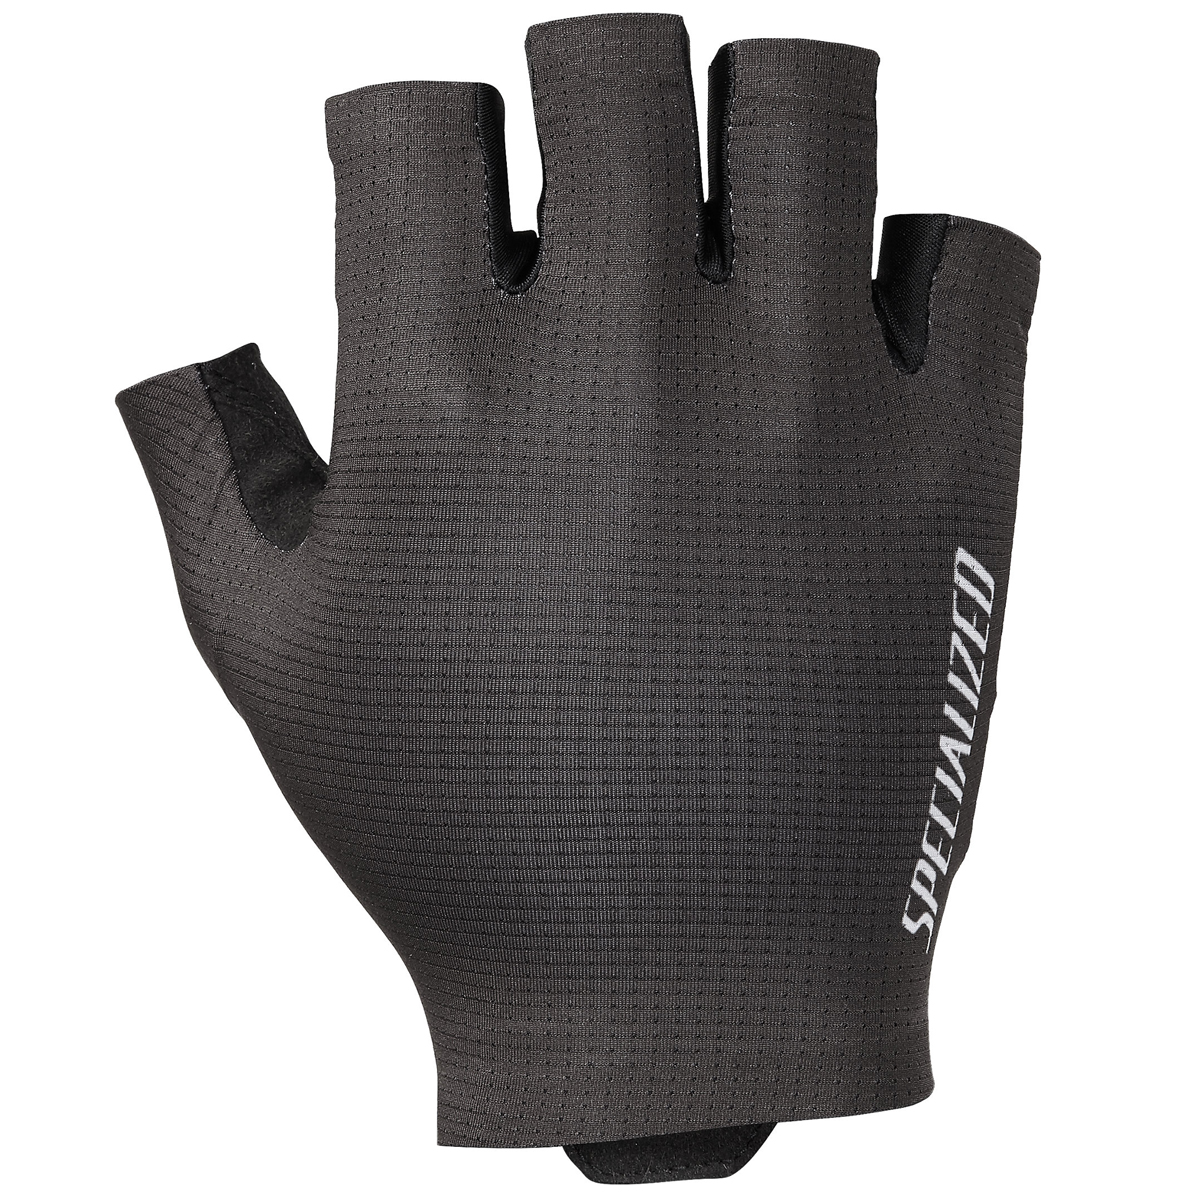 Produktbild von Specialized SL Pro Kurzfinger-Handschuhe - schwarz